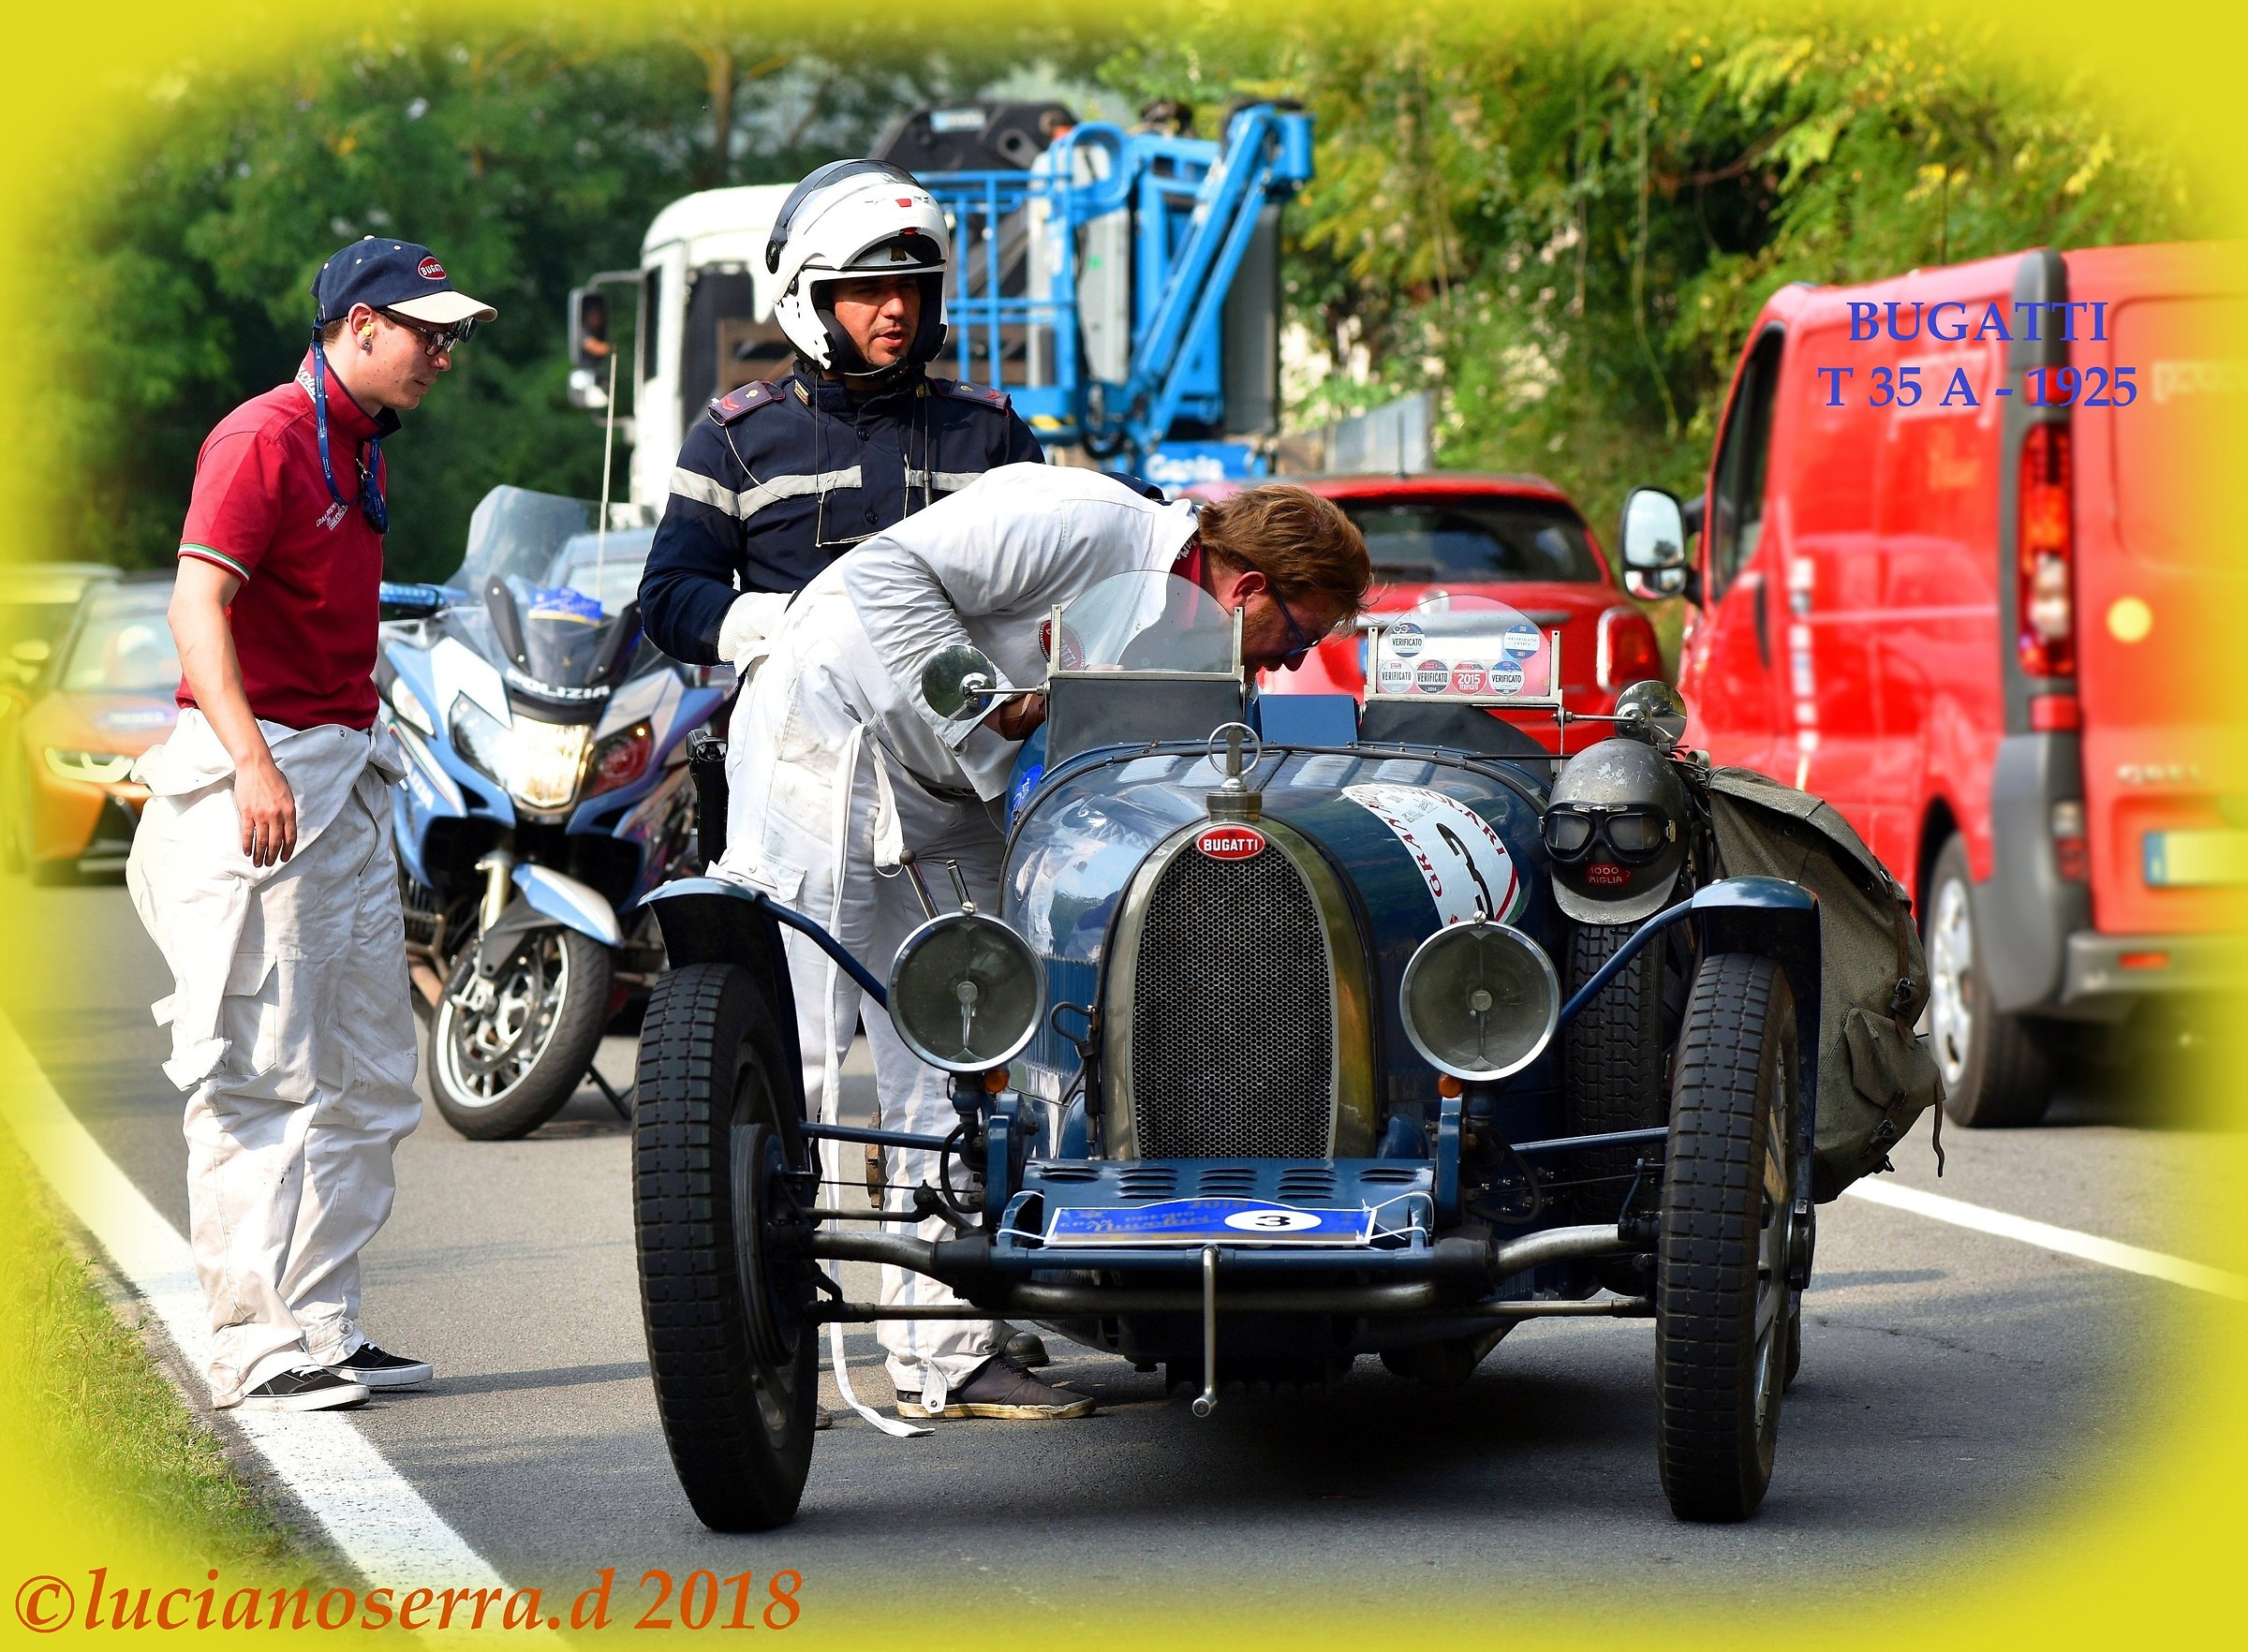 Bugatti Type 35 A-1925...